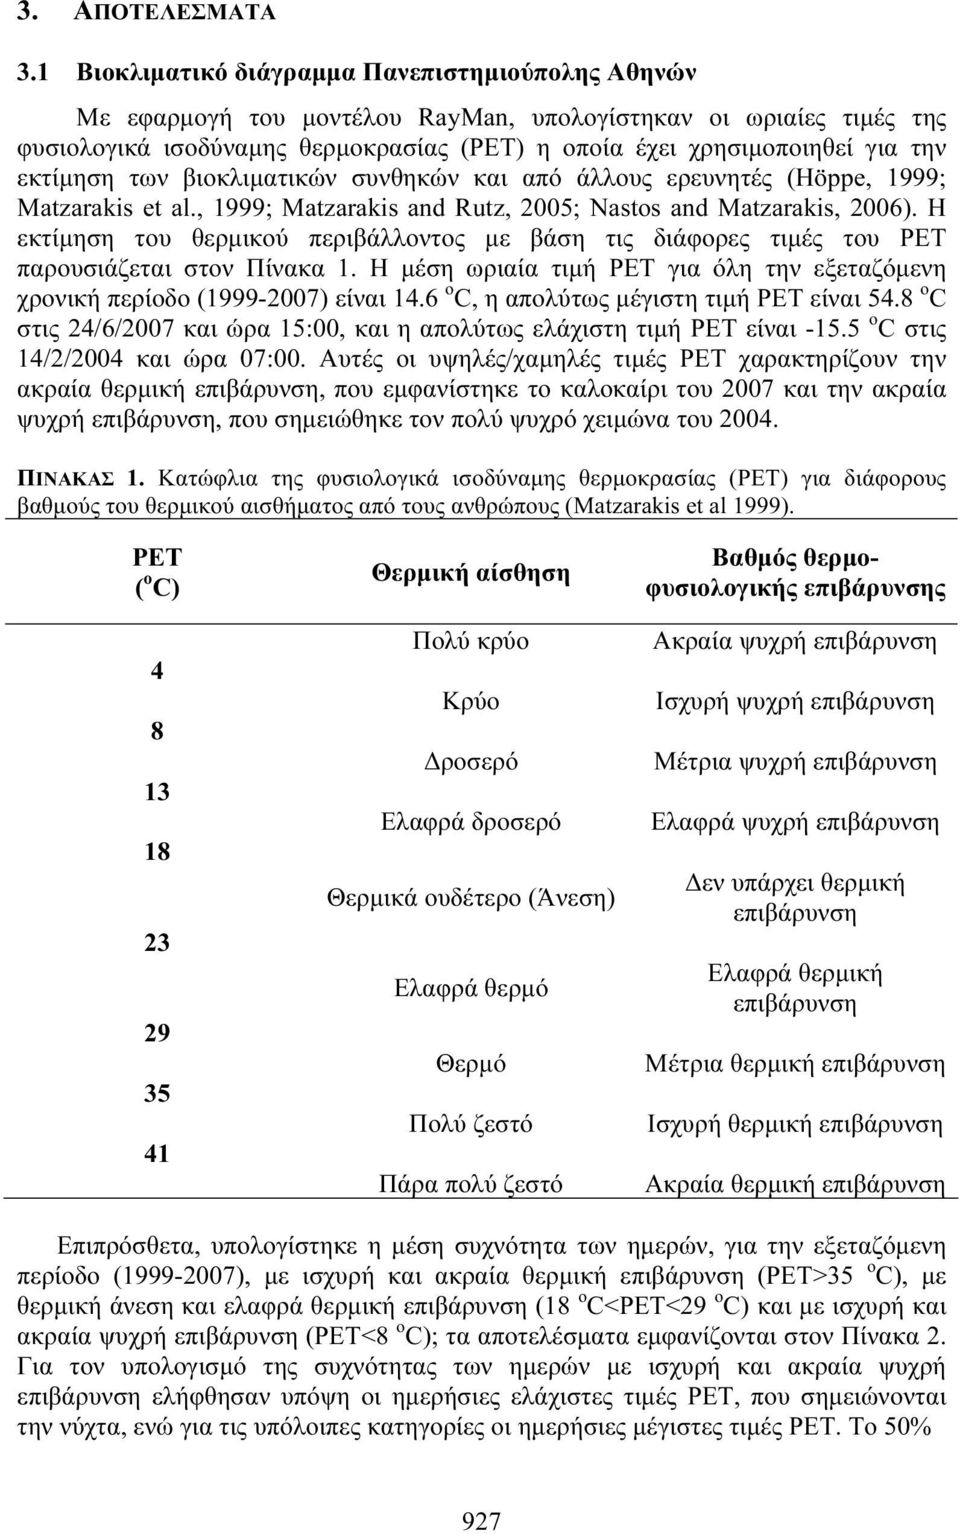 εκτίμηση των βιοκλιματικών συνθηκών και από άλλους ερευνητές (Höppe, 1999; Matzarakis et al., 1999; Matzarakis and Rutz, 2005; Nastos and Matzarakis, 2006).